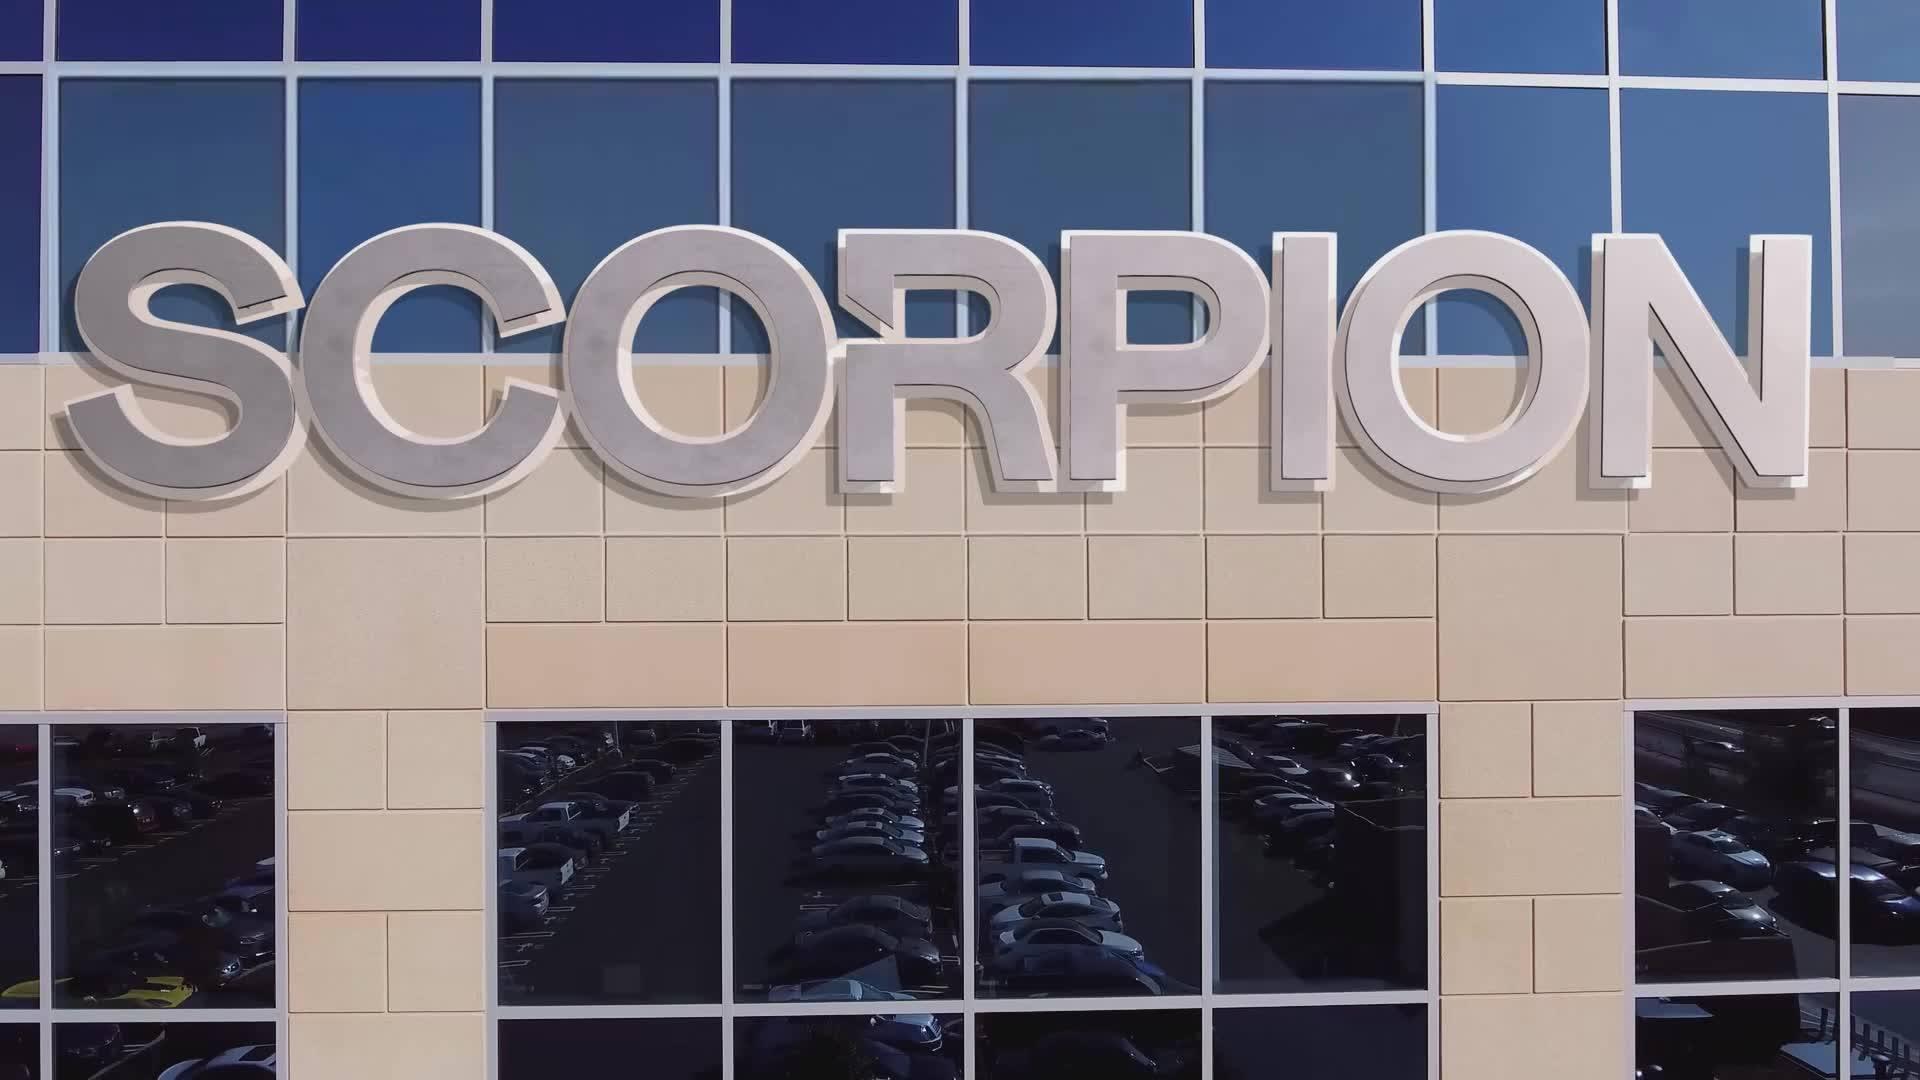 Scorpion Technology